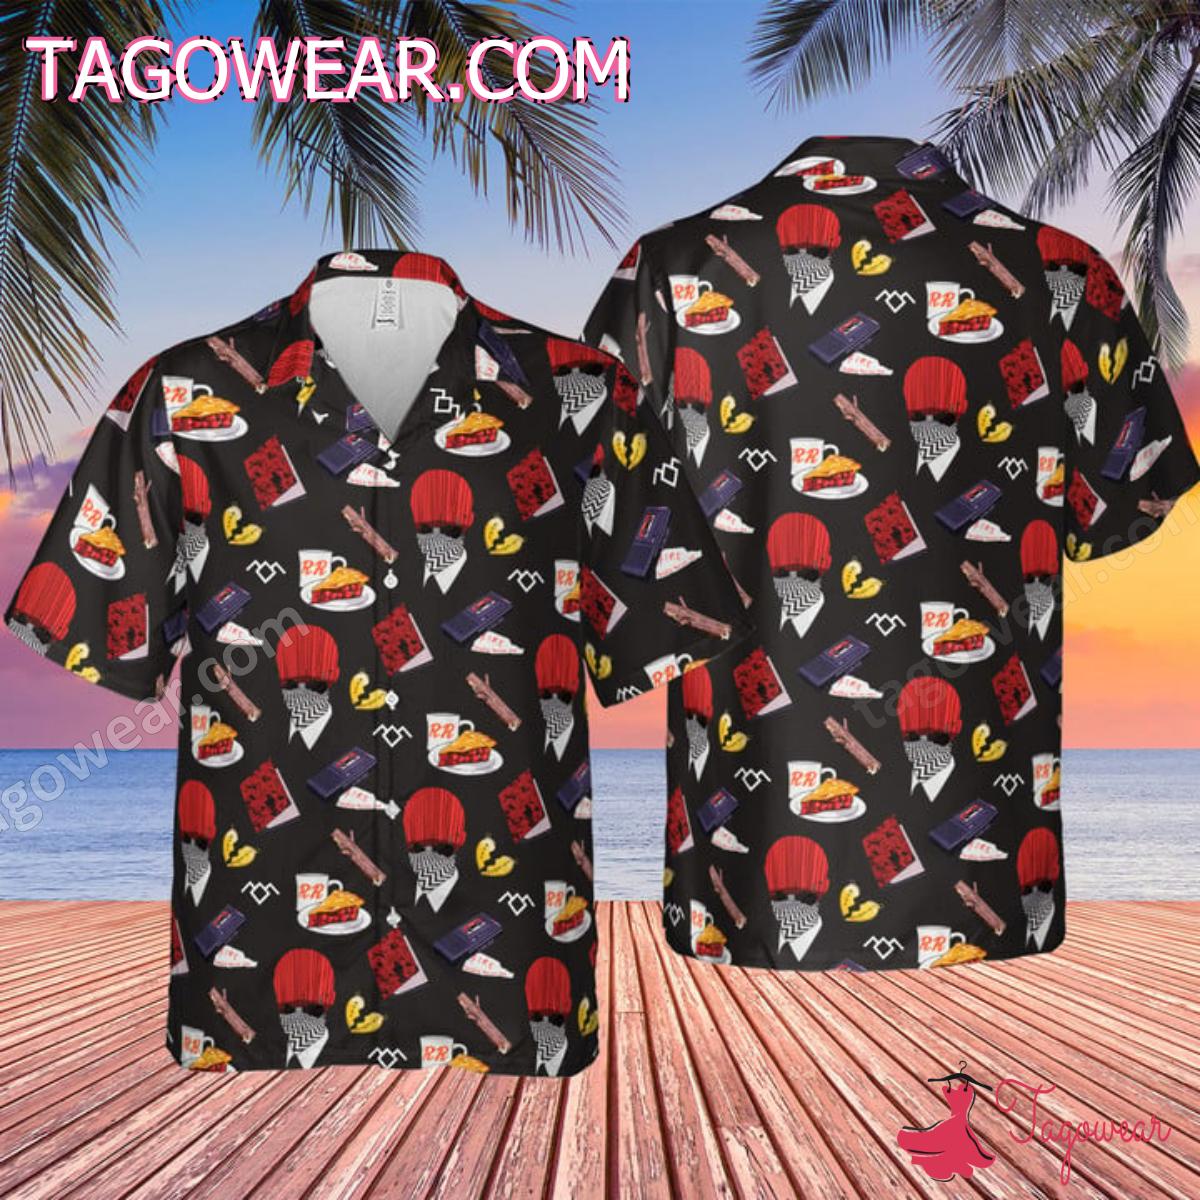 Twin Peaks Tv Series Pattern Hawaiian Shirt - Tagowear